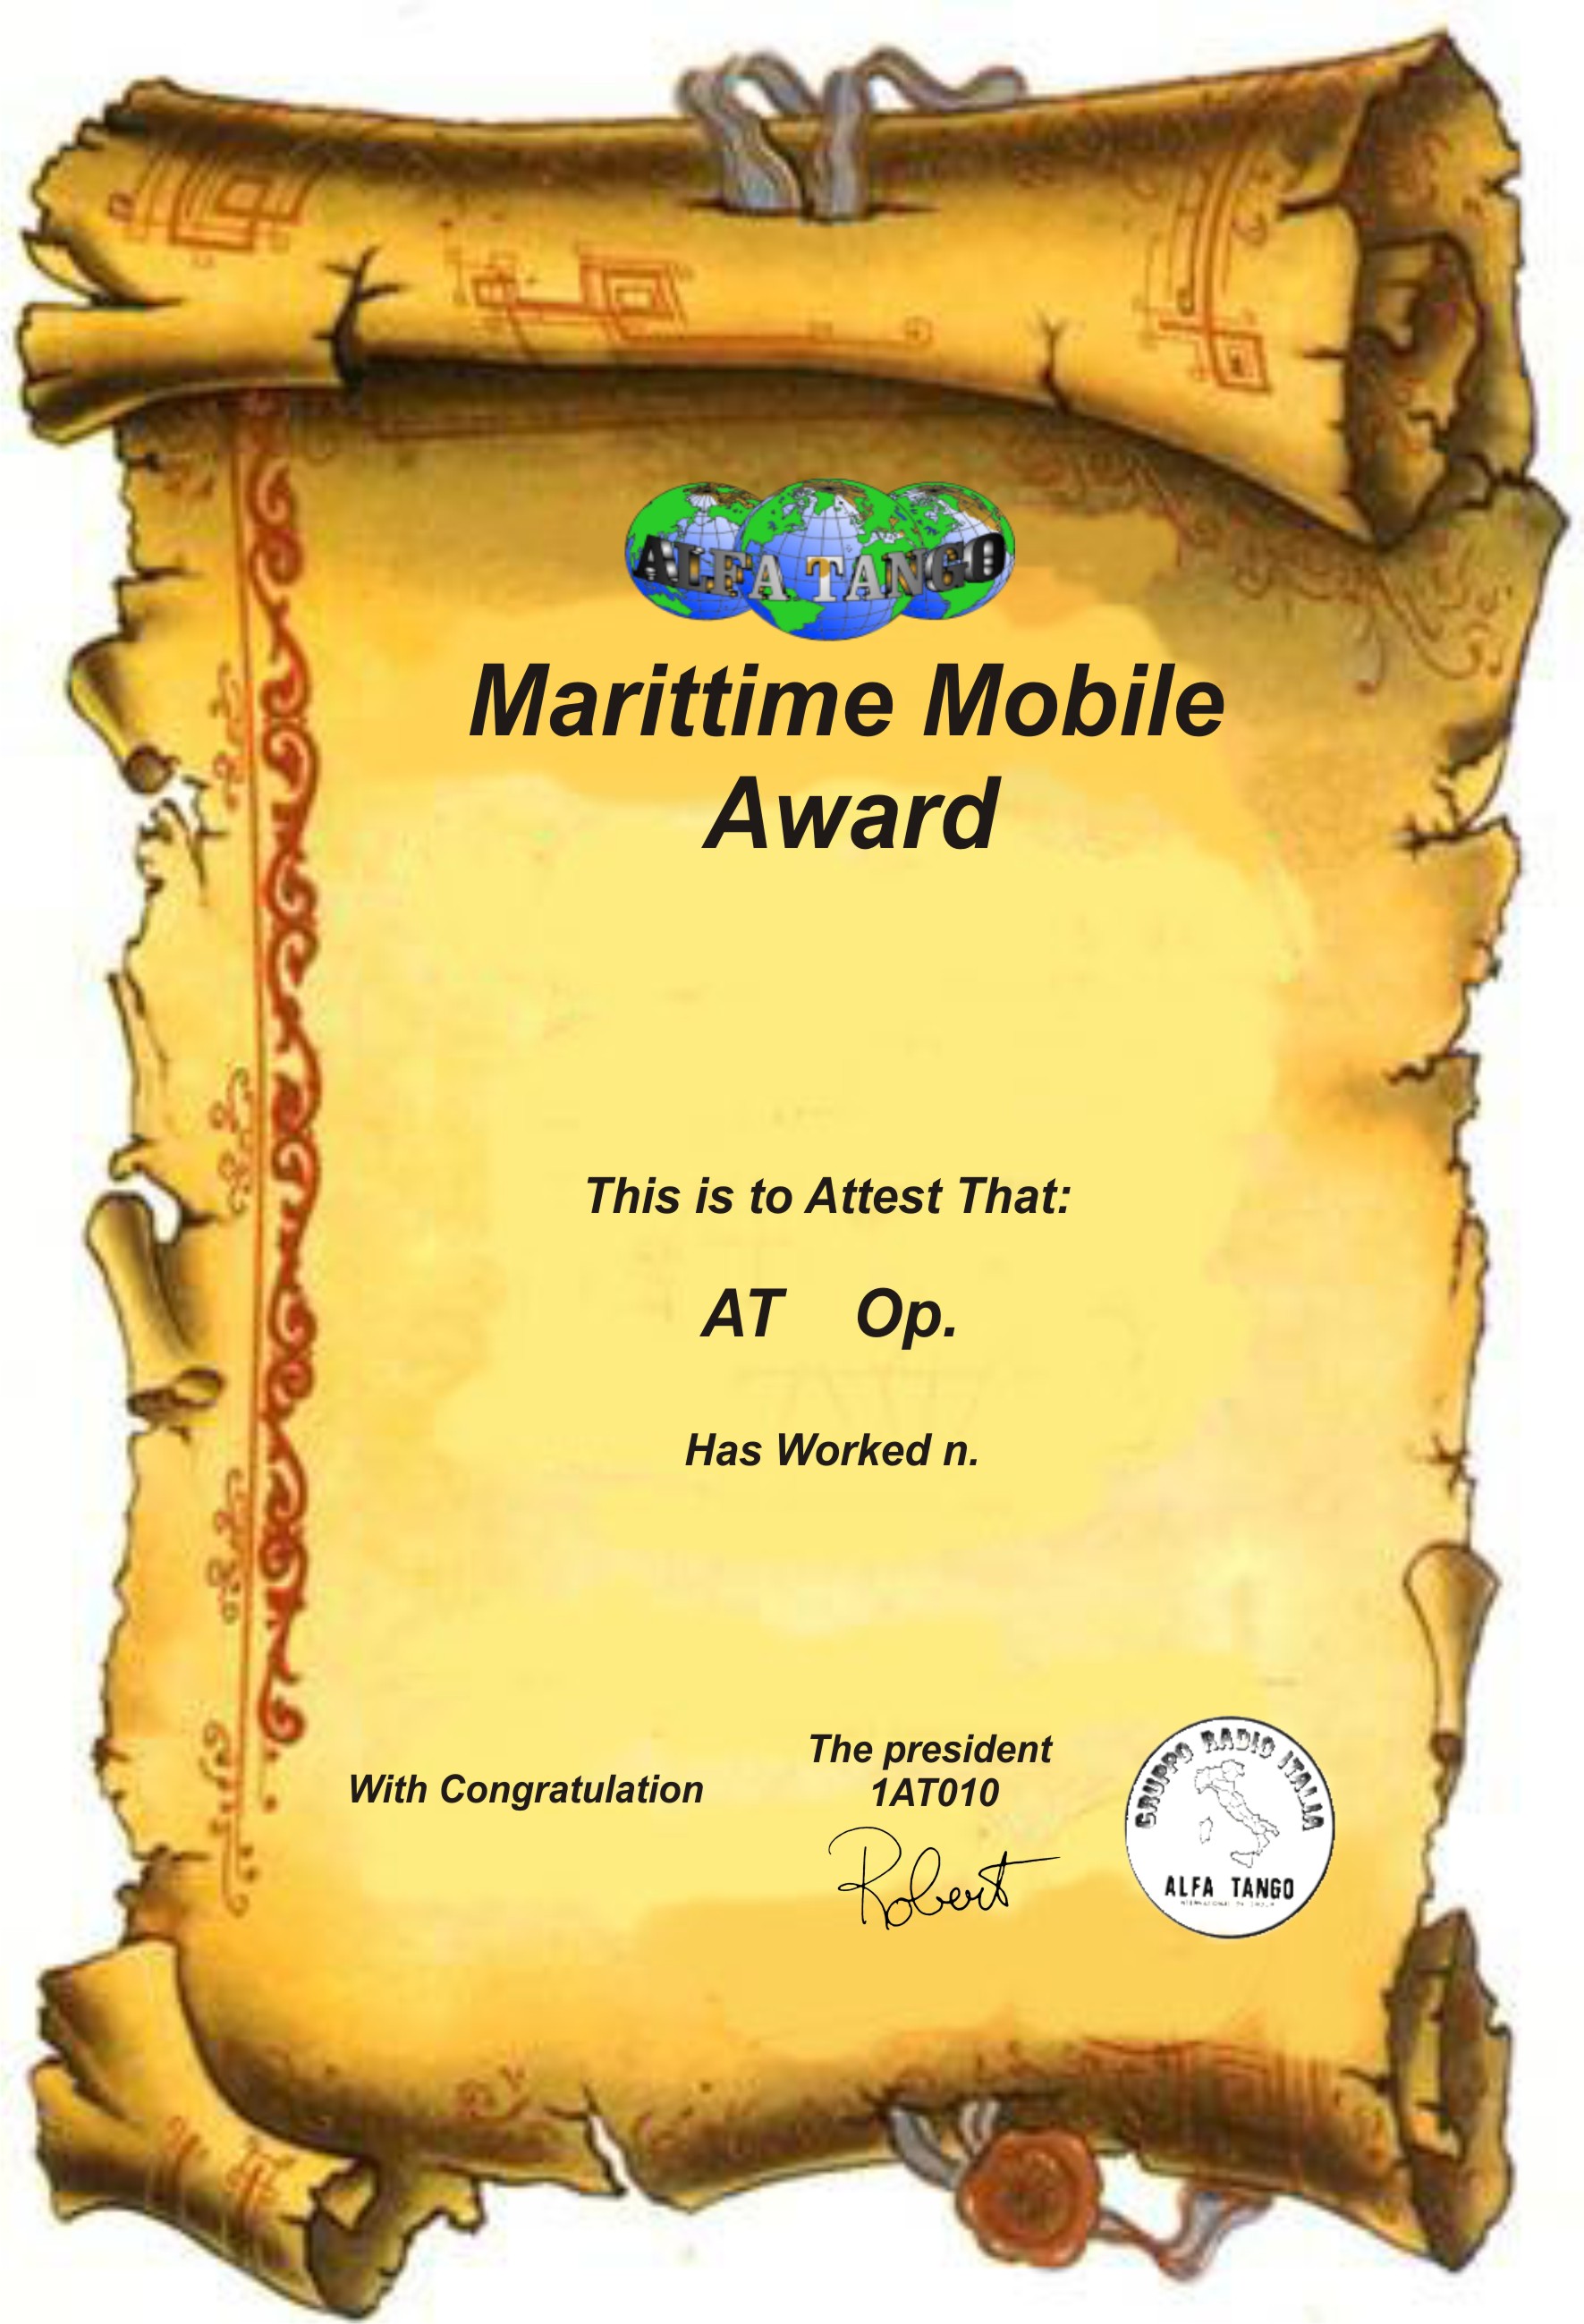 28_Marittime_Mobile_Award.jpg